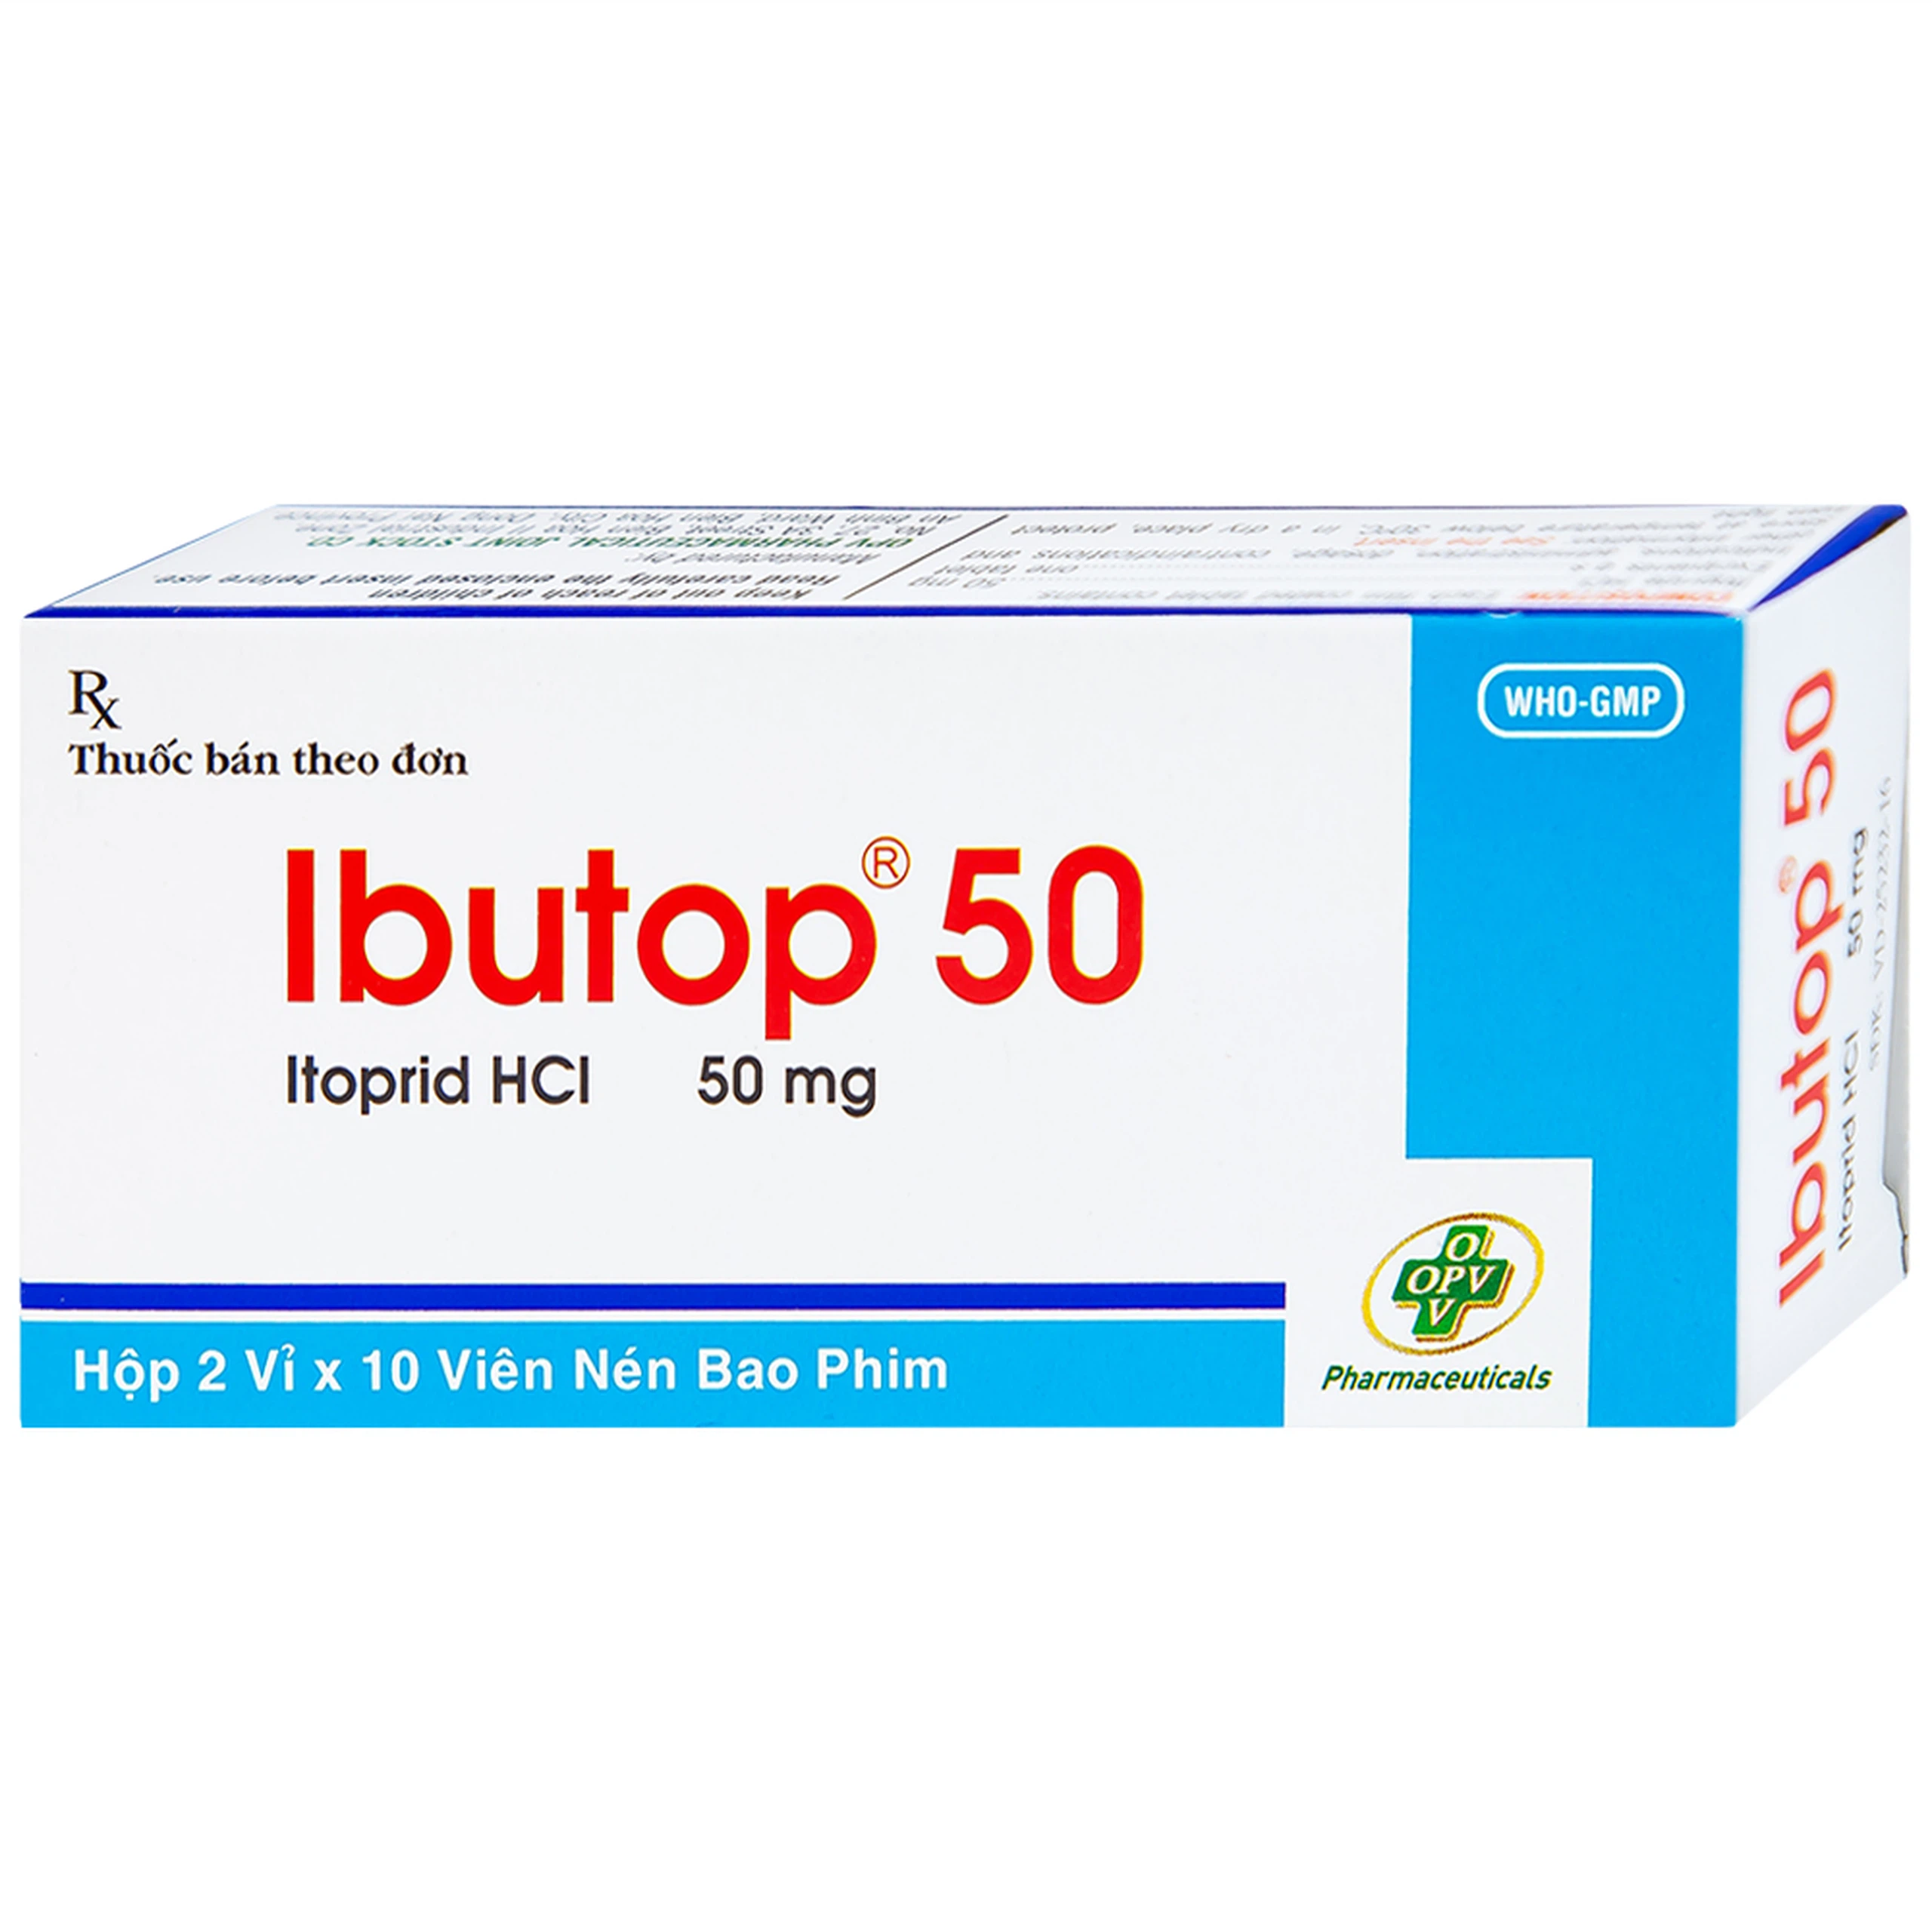 Thuốc Ibutop 50 OPV điều trị viêm dạ dày, chướng bụng, đau bụng, chán ăn, ợ nóng (2 vỉ x 10 viên)